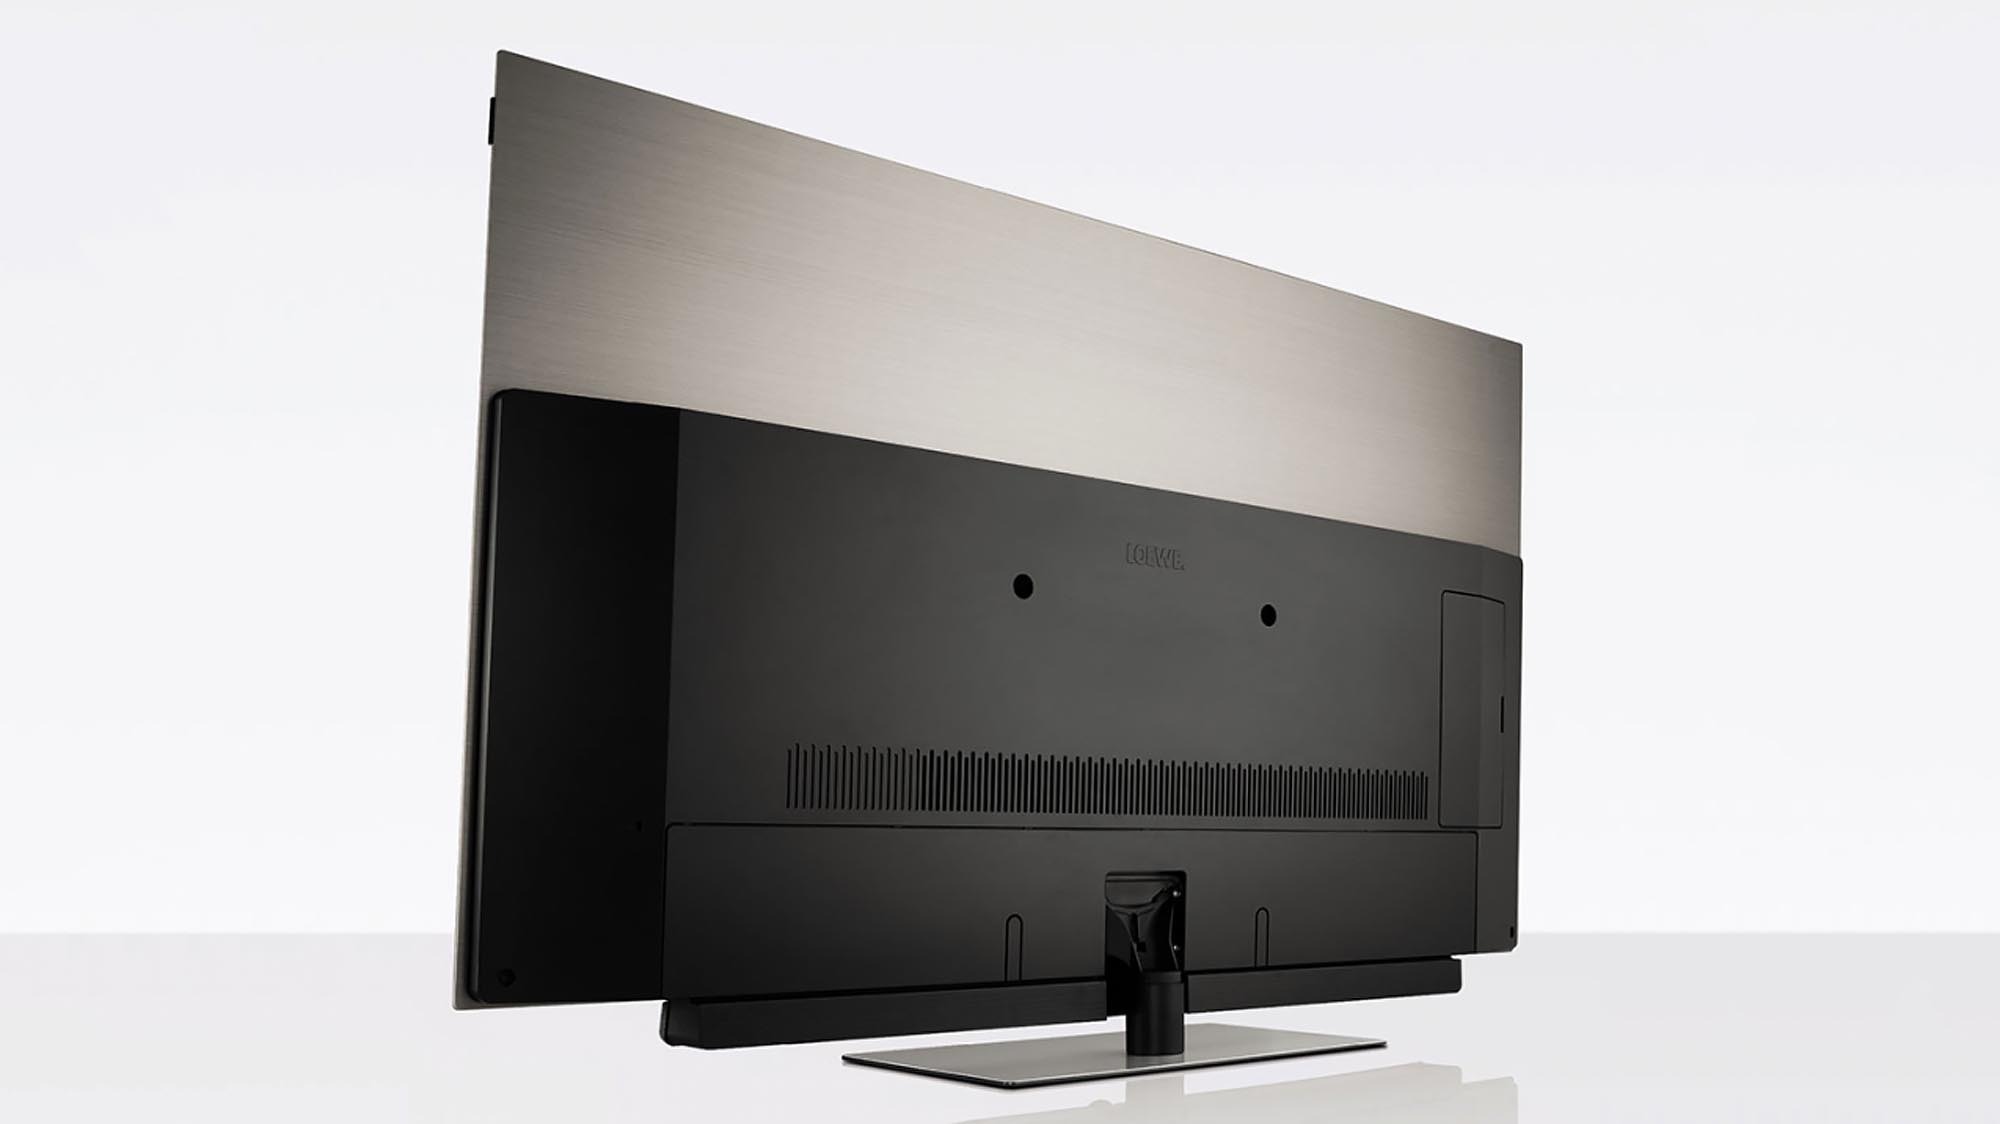 LOEWE BILD 3.65 - 4K UHD OLED TV 